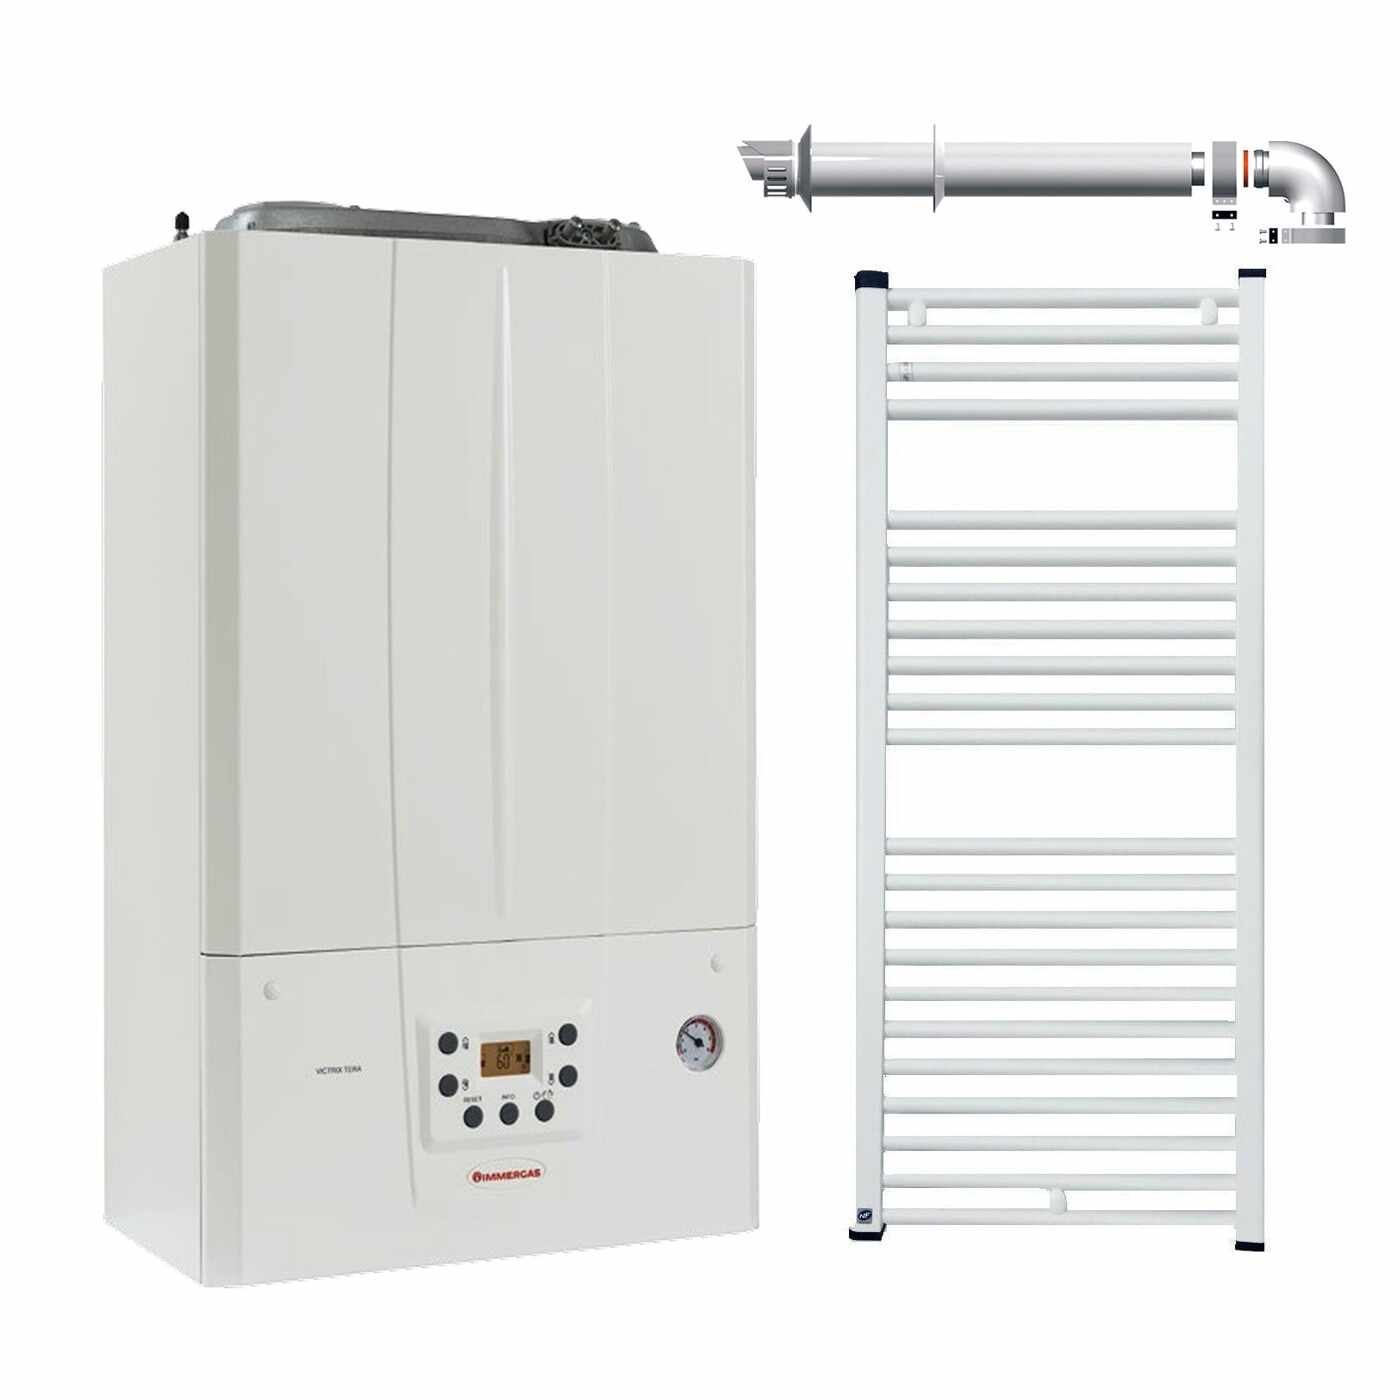 Centrala termica in condensare Immergas Victrix TERA 24, kit evacuare inclus si radiator baie Fornello 500x800